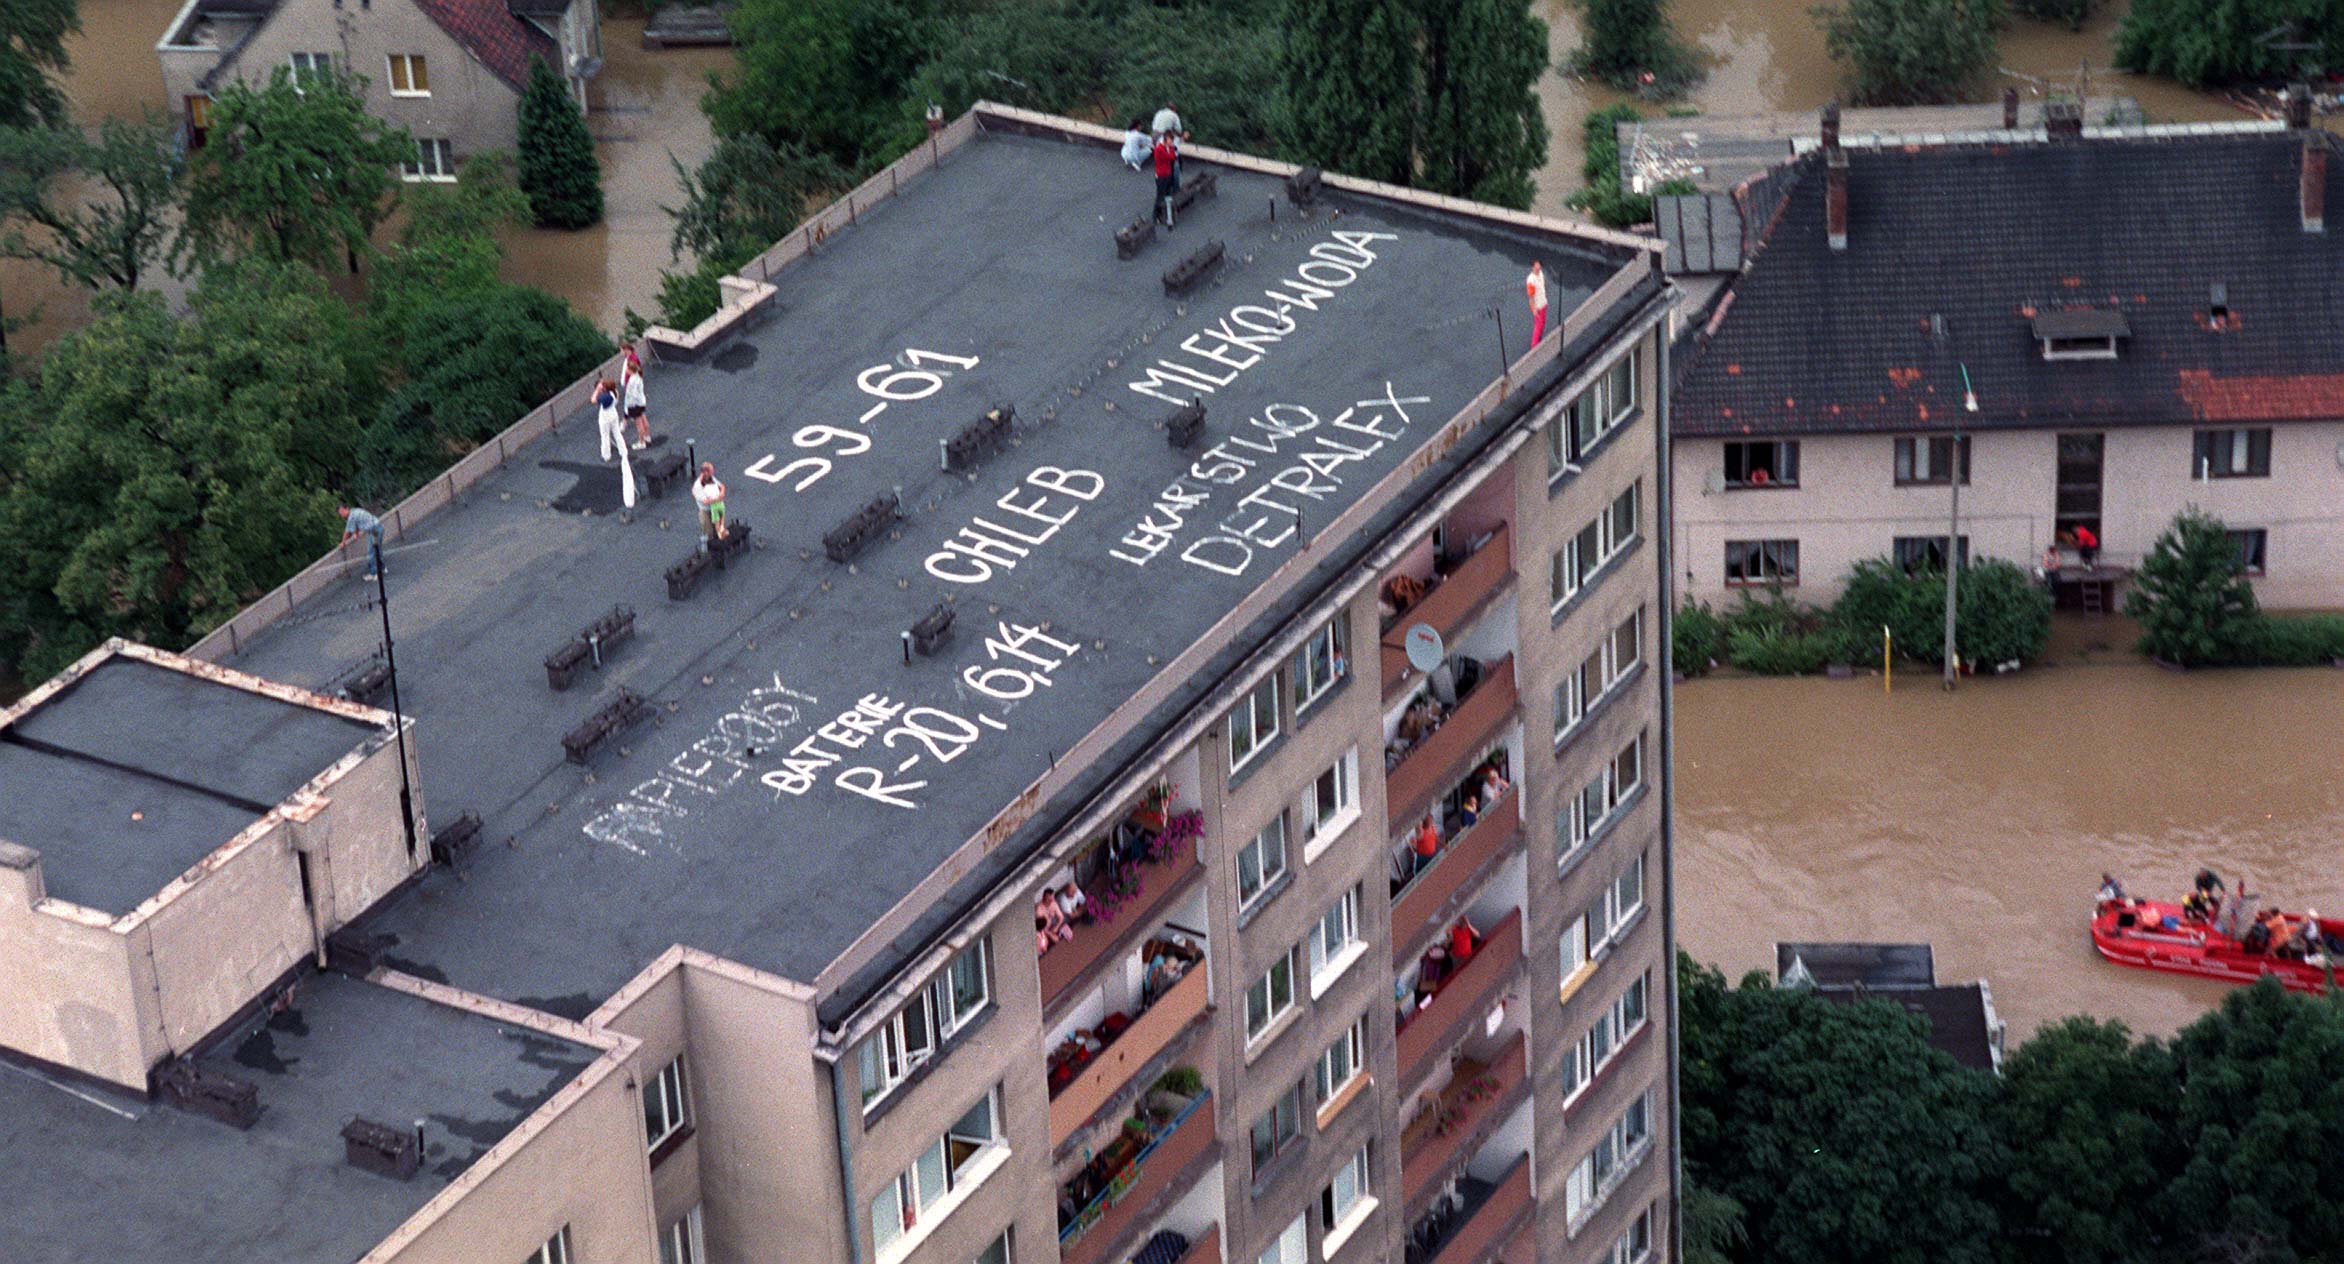 Pomocy! - Mieszkańcy zalanego bloku we Wrocławiu w taki sposób wzywają pomocy. Telefony nie działają już drugi dzień.